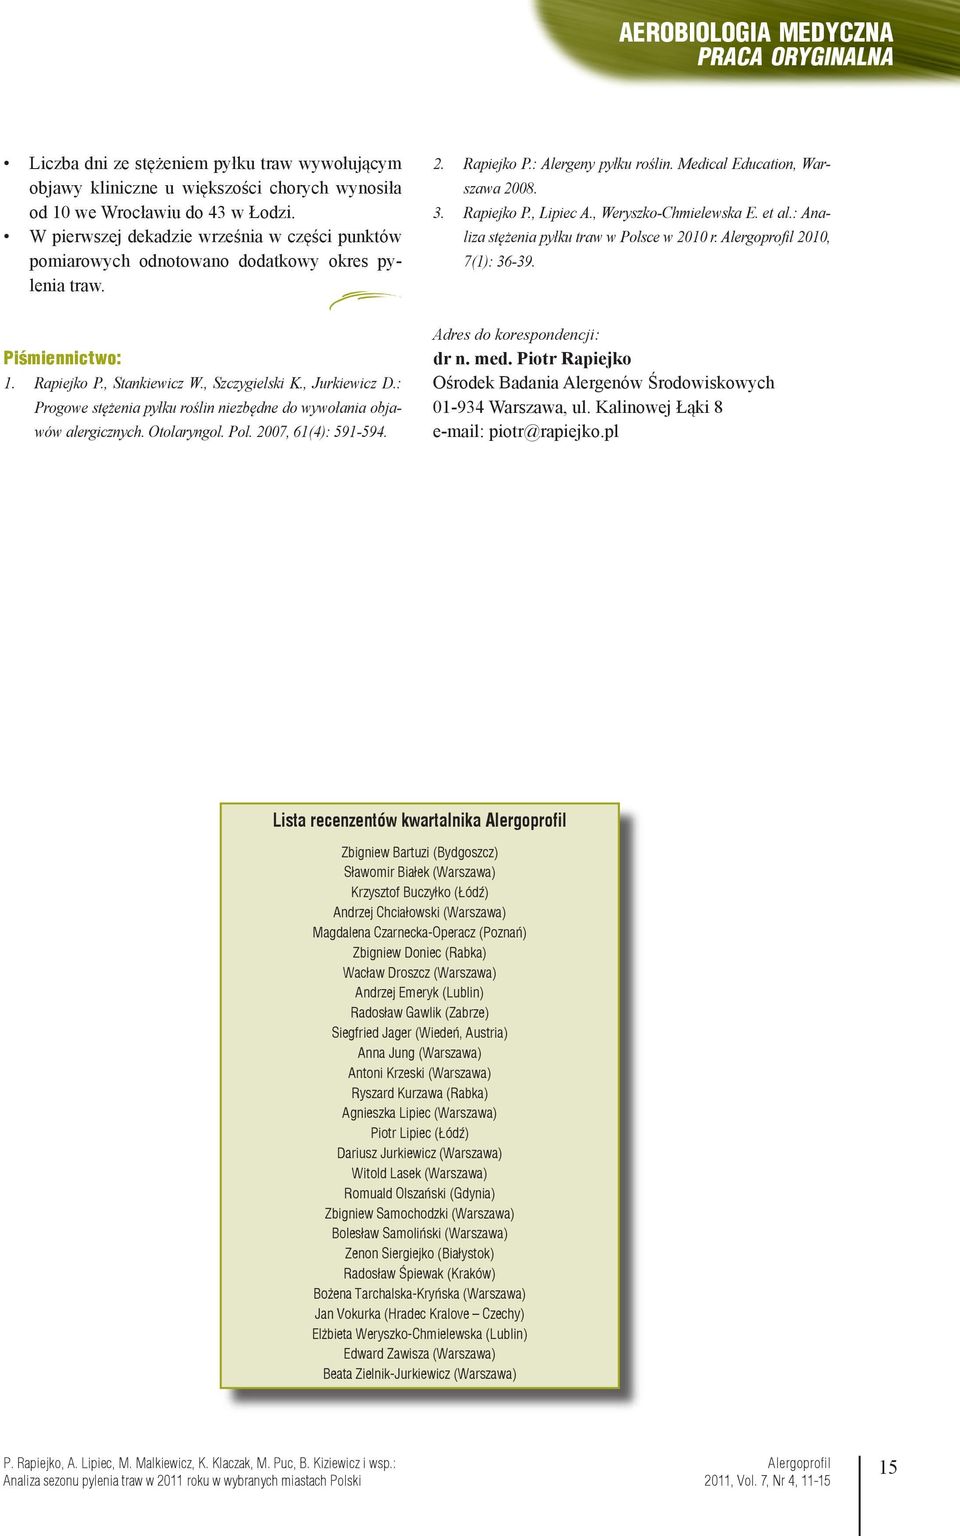 , Weryszko-Chmielewska E. et al.: Analiza stężenia pyłku traw w Polsce w 2010 r. 2010, 7(1): 36-39. Piśmiennictwo: 1. Rapiejko P., Stankiewicz W., Szczygielski K., Jurkiewicz D.